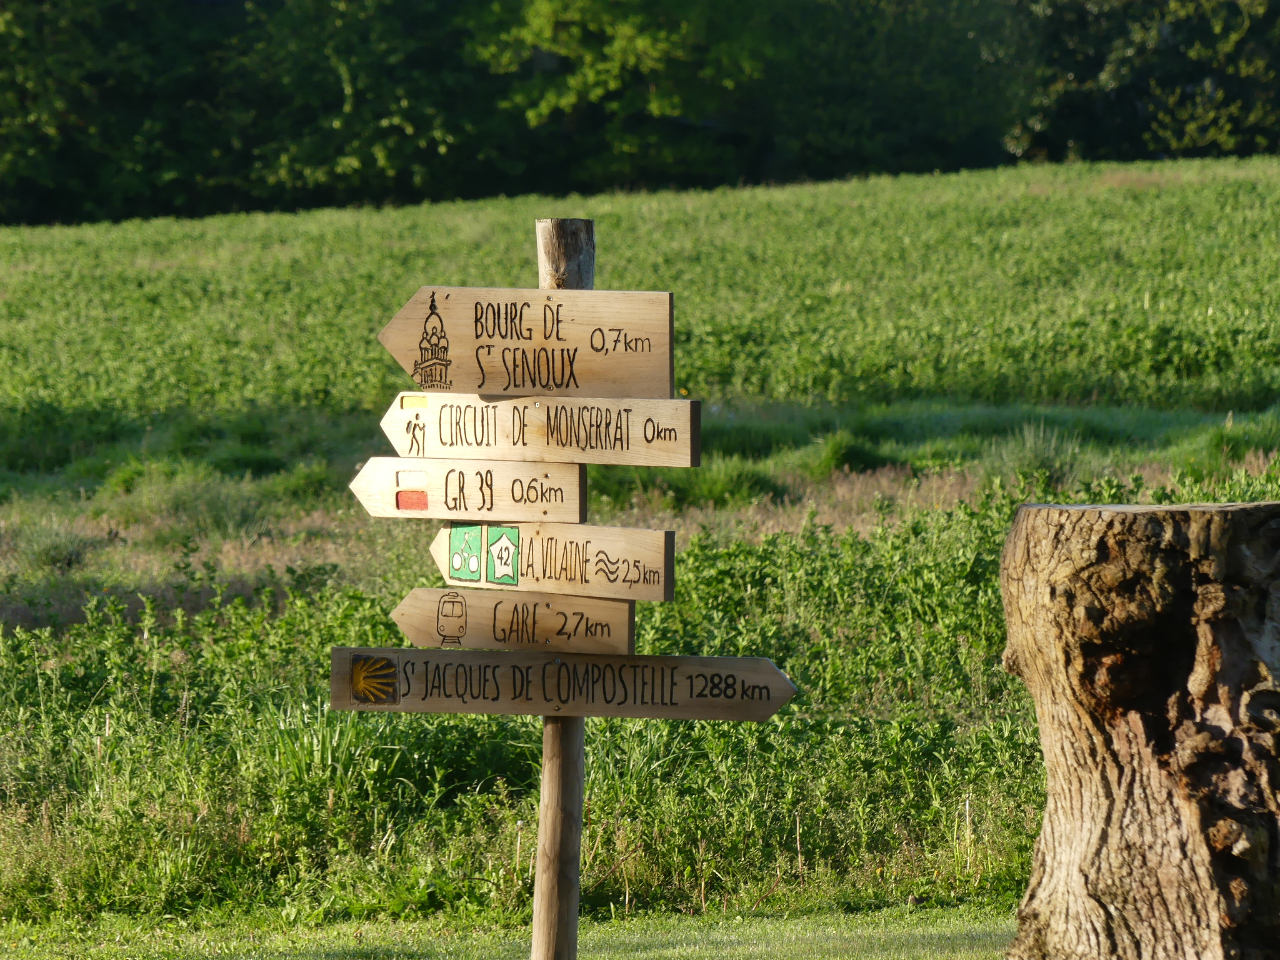 Hôte GreenGo: Les Gîtes du Verger à Saint Senoux, gîte charmant et singulier sur un sentier de randonnée - Image 37